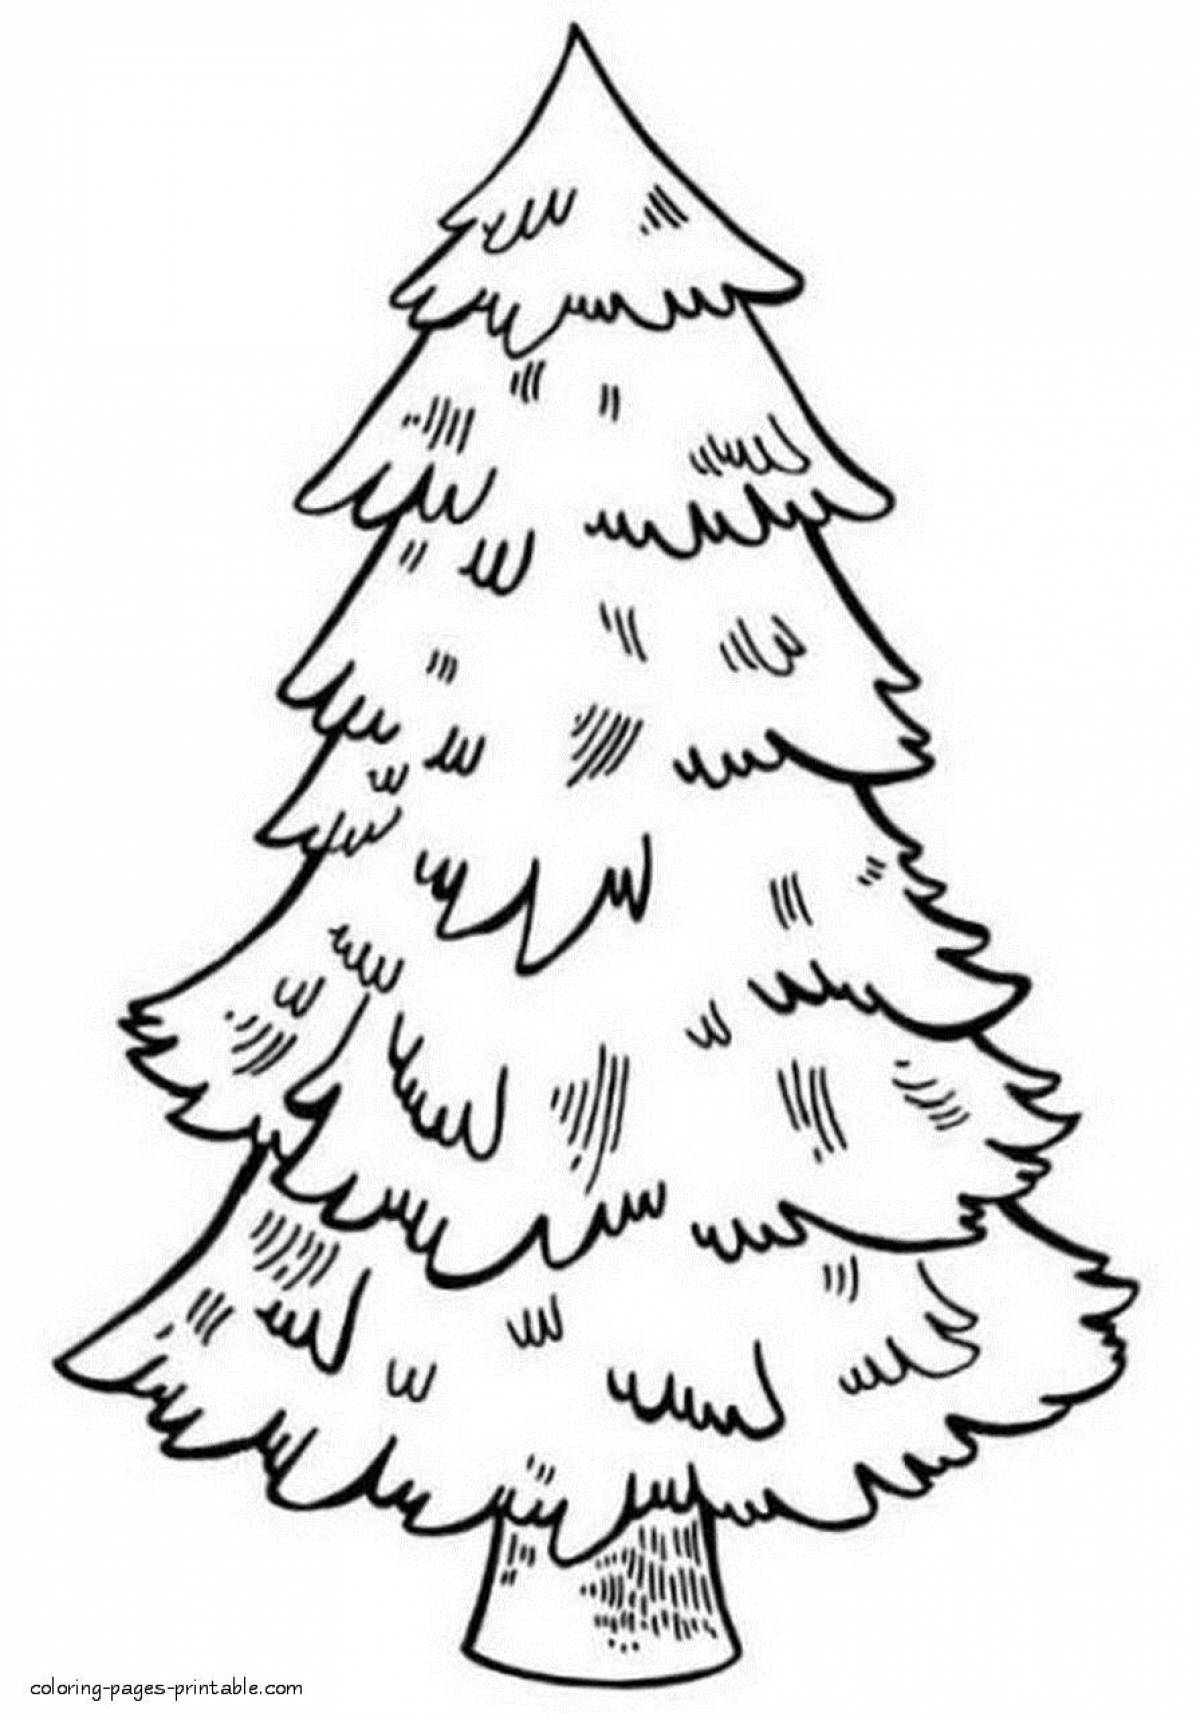 Раскраска гламурная новогодняя елка для детей 3-4 лет